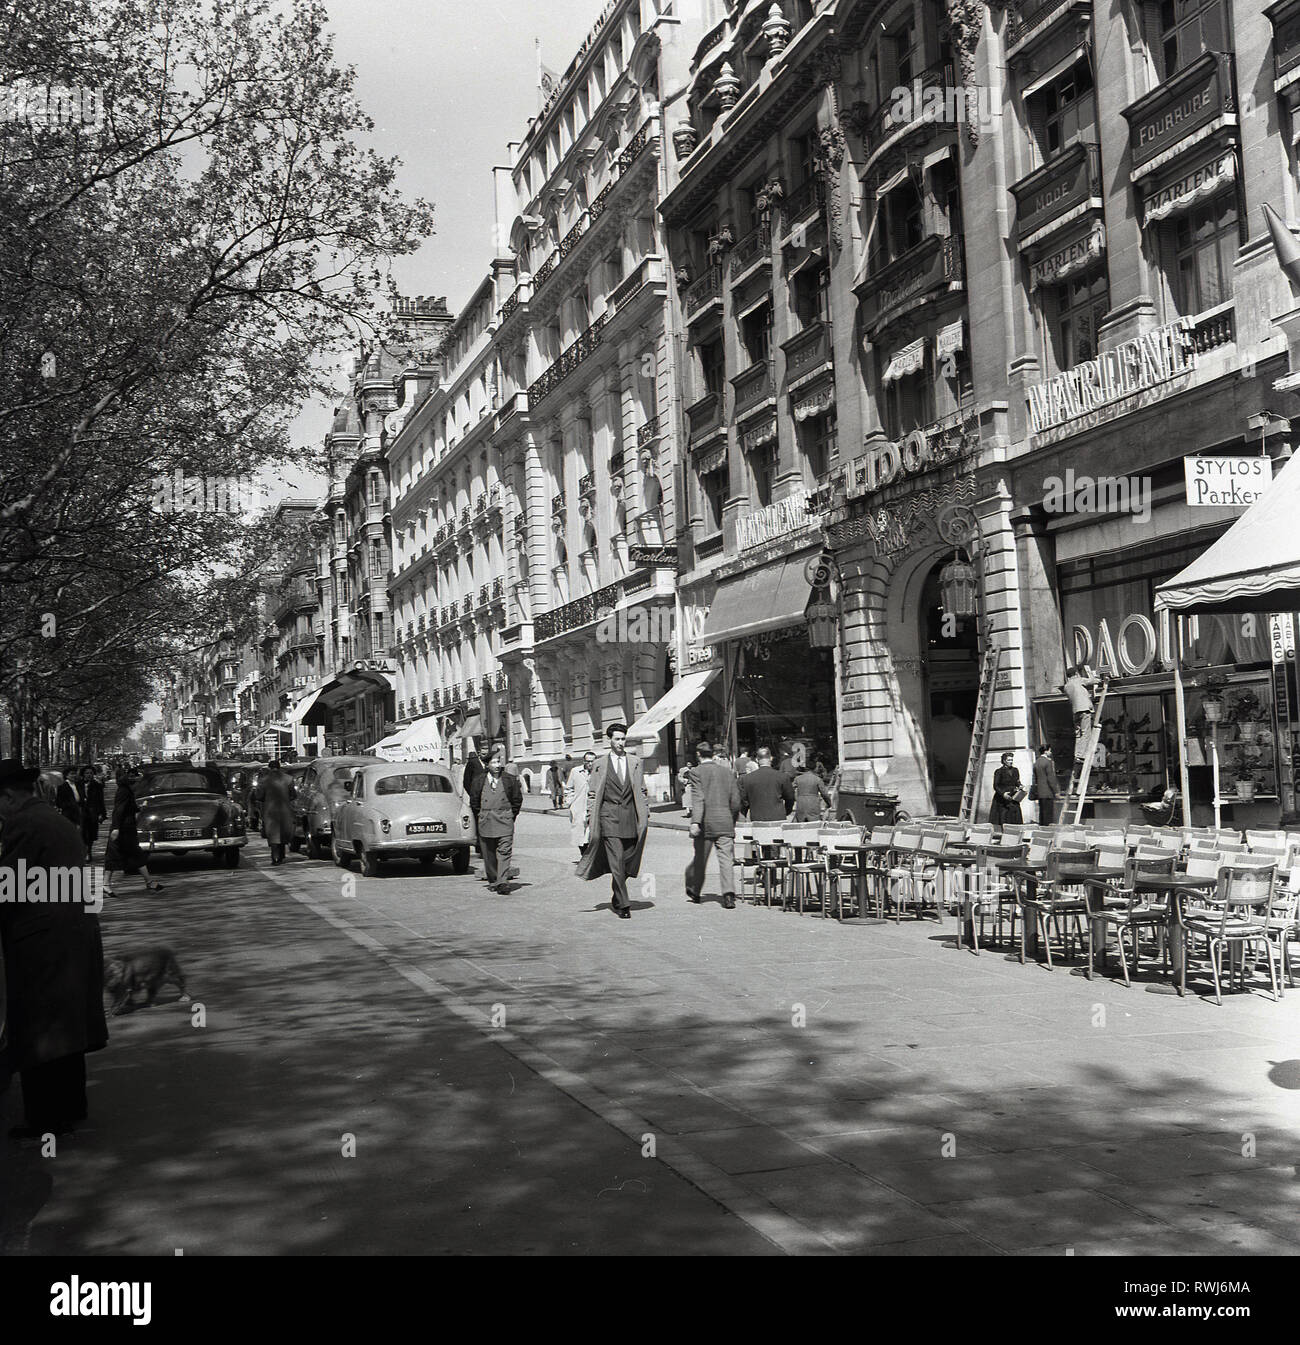 1950s, Paris, France, une petite rue à côté de l'avenue des champs Elysées avec des bureaux, des boutiques et des cafés au niveau de la rue et des voitures de l'époque garées. Banque D'Images